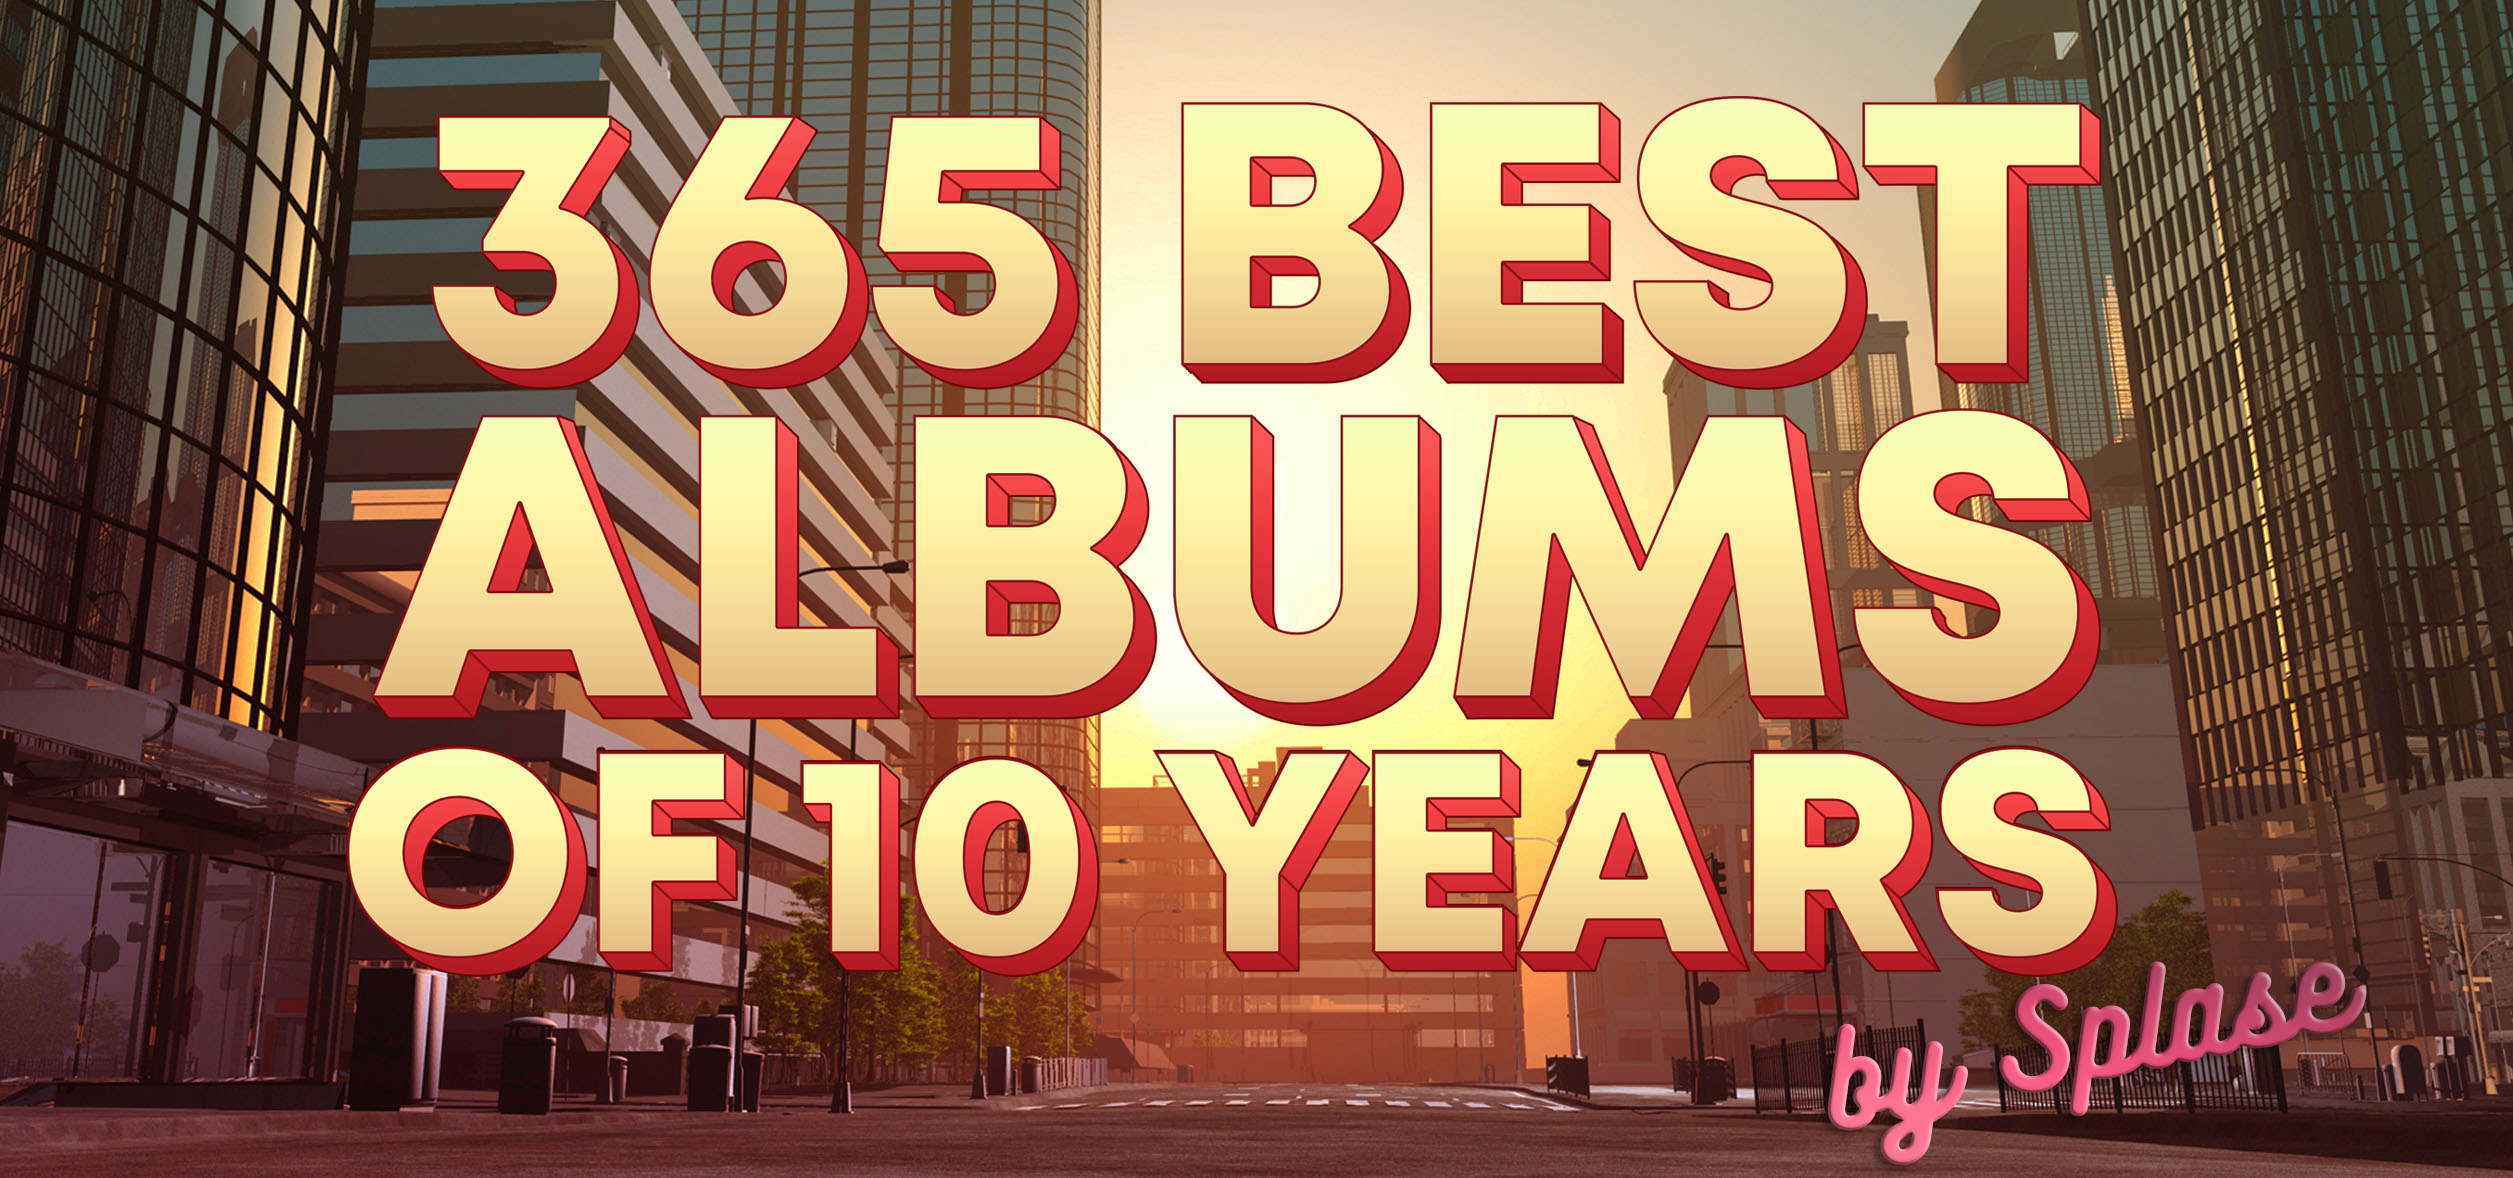 365 Лучших Альбомов за 10 лет (2009 - 2019) / 365 Best Albums of 10 Years (2009 - 2019)